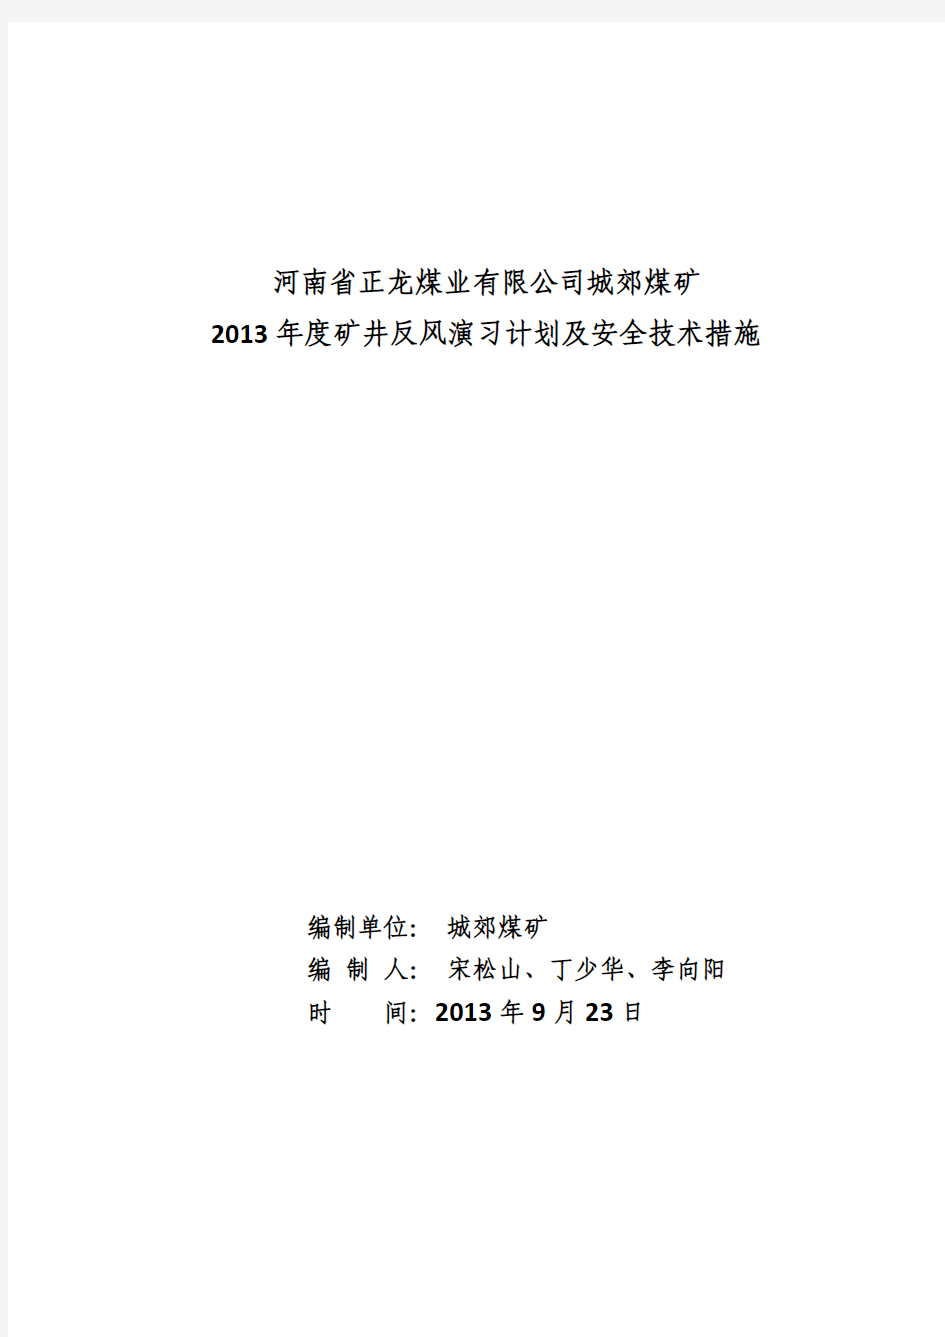 2013年反风演习技术措施及计划(终稿)9.27(1)